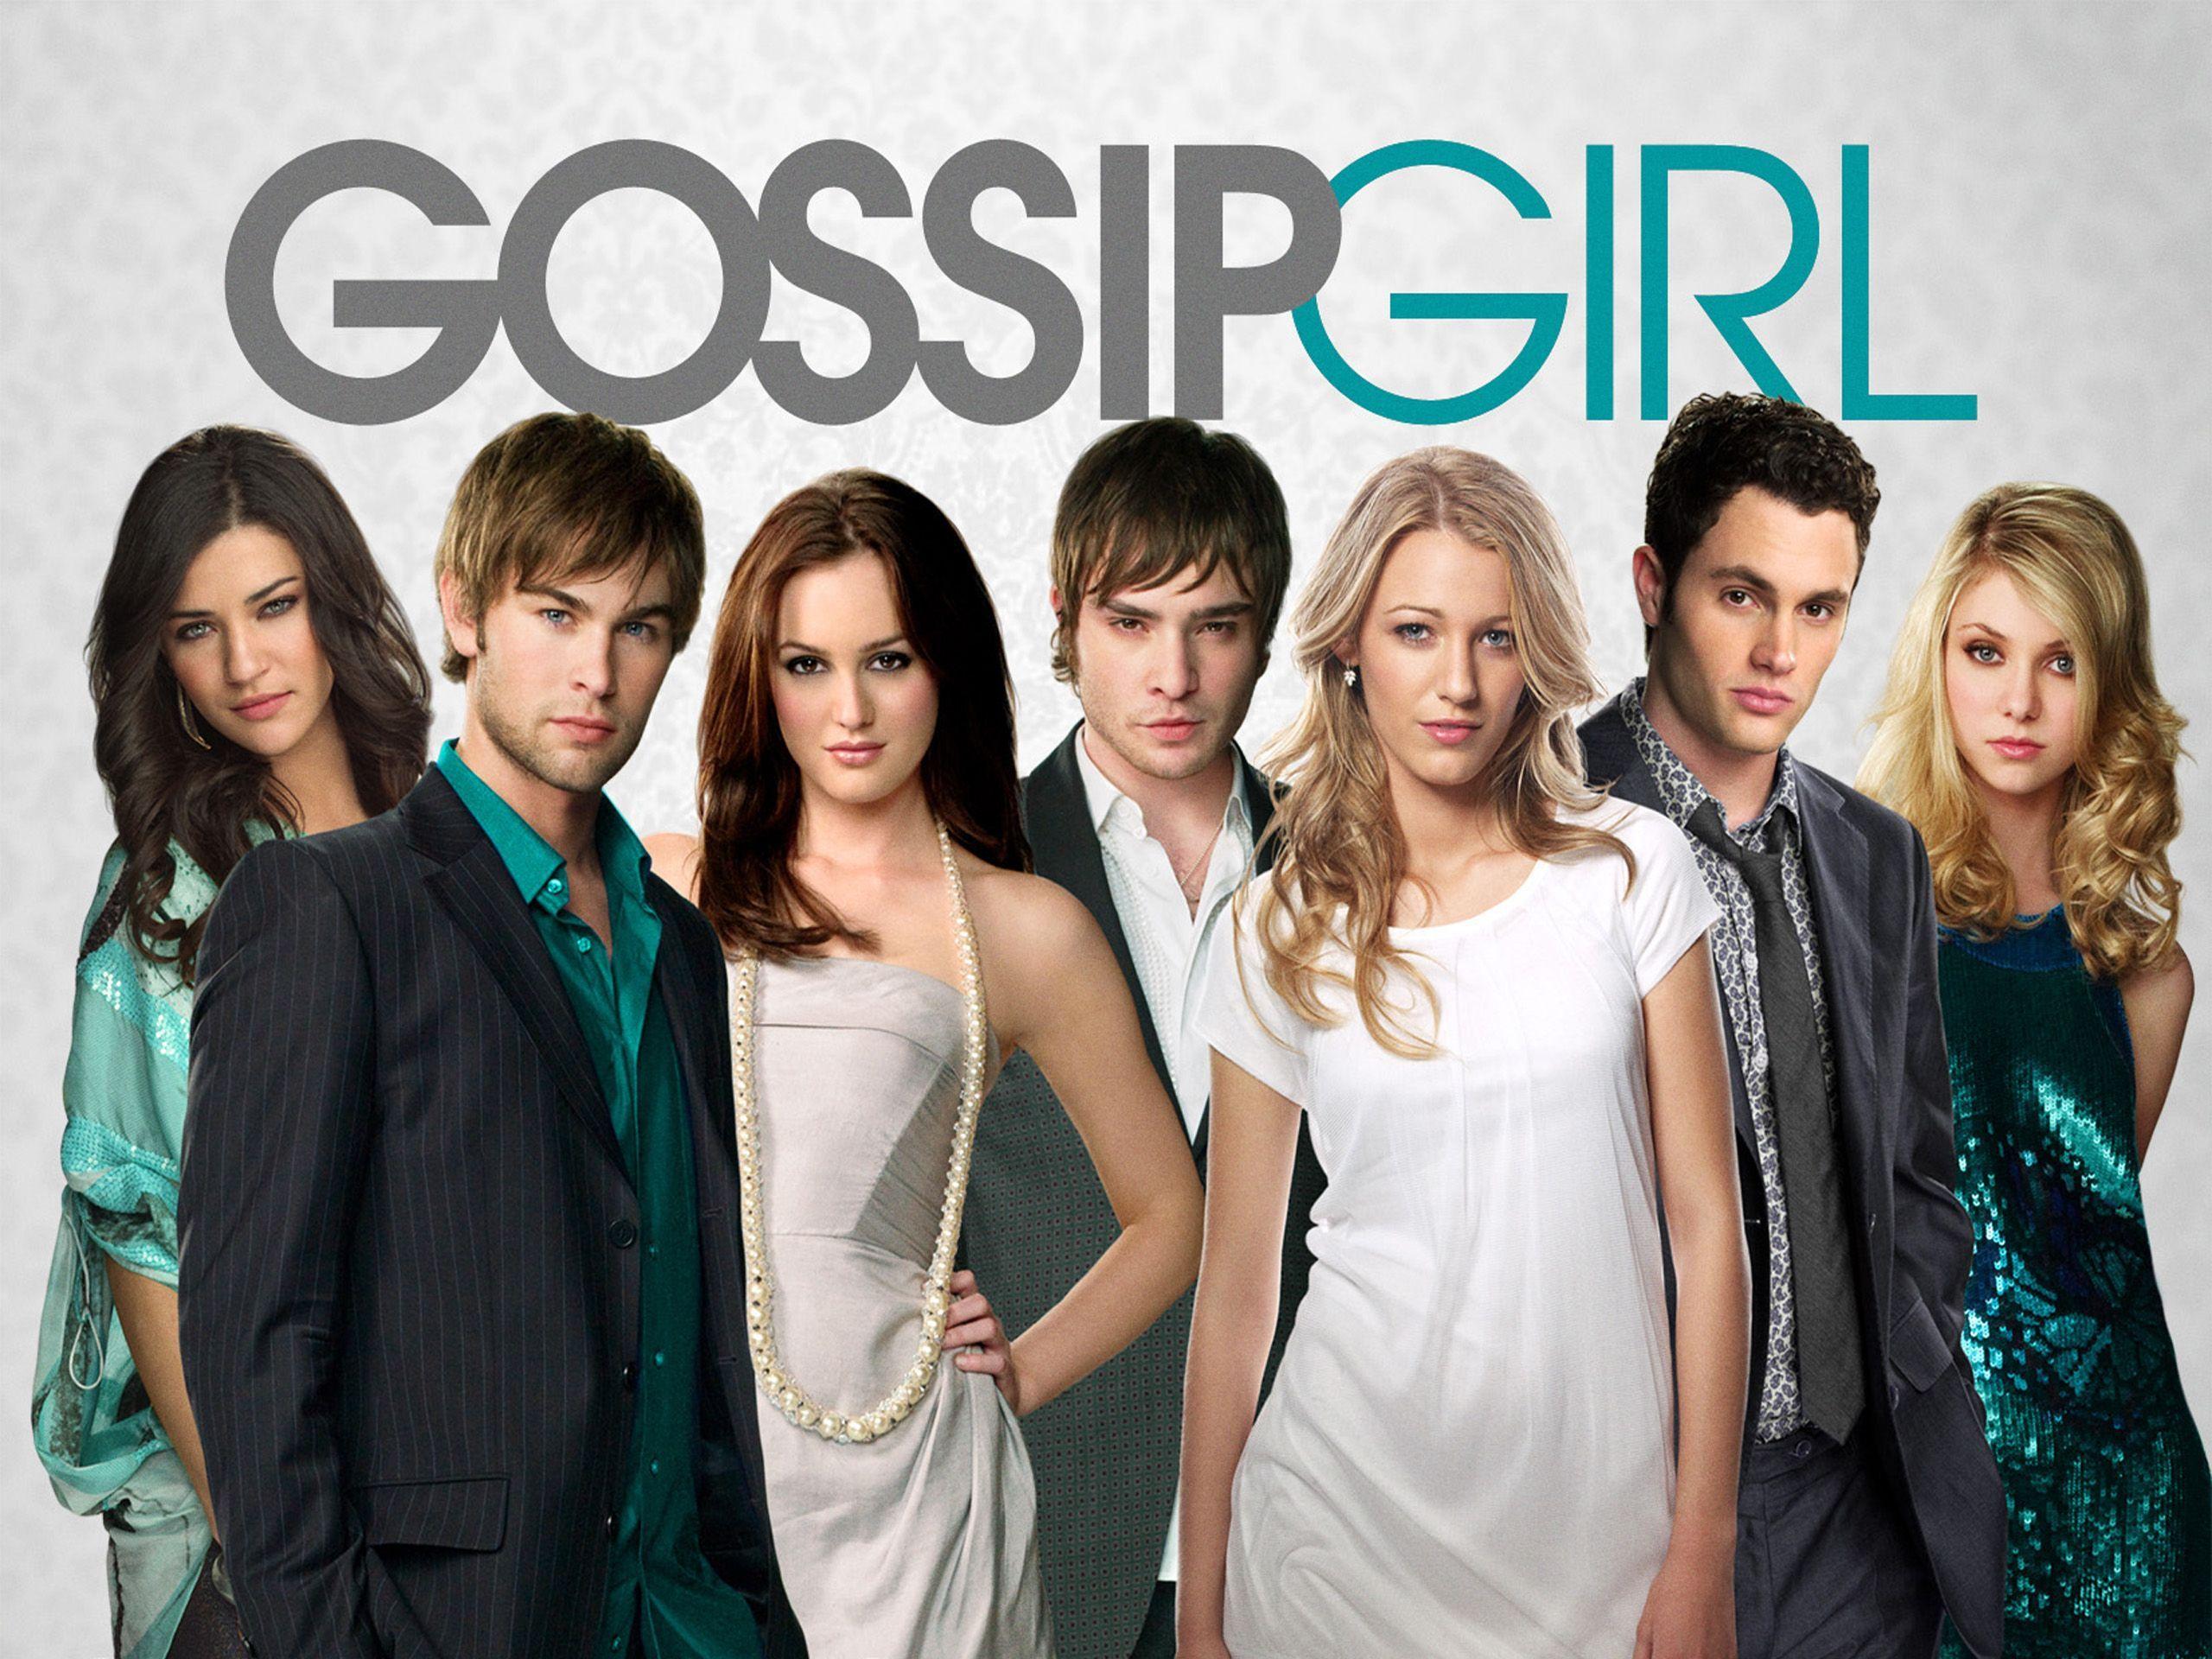 Gossip Girl Wallpapers - Top Free Gossip Girl Backgrounds - WallpaperAccess